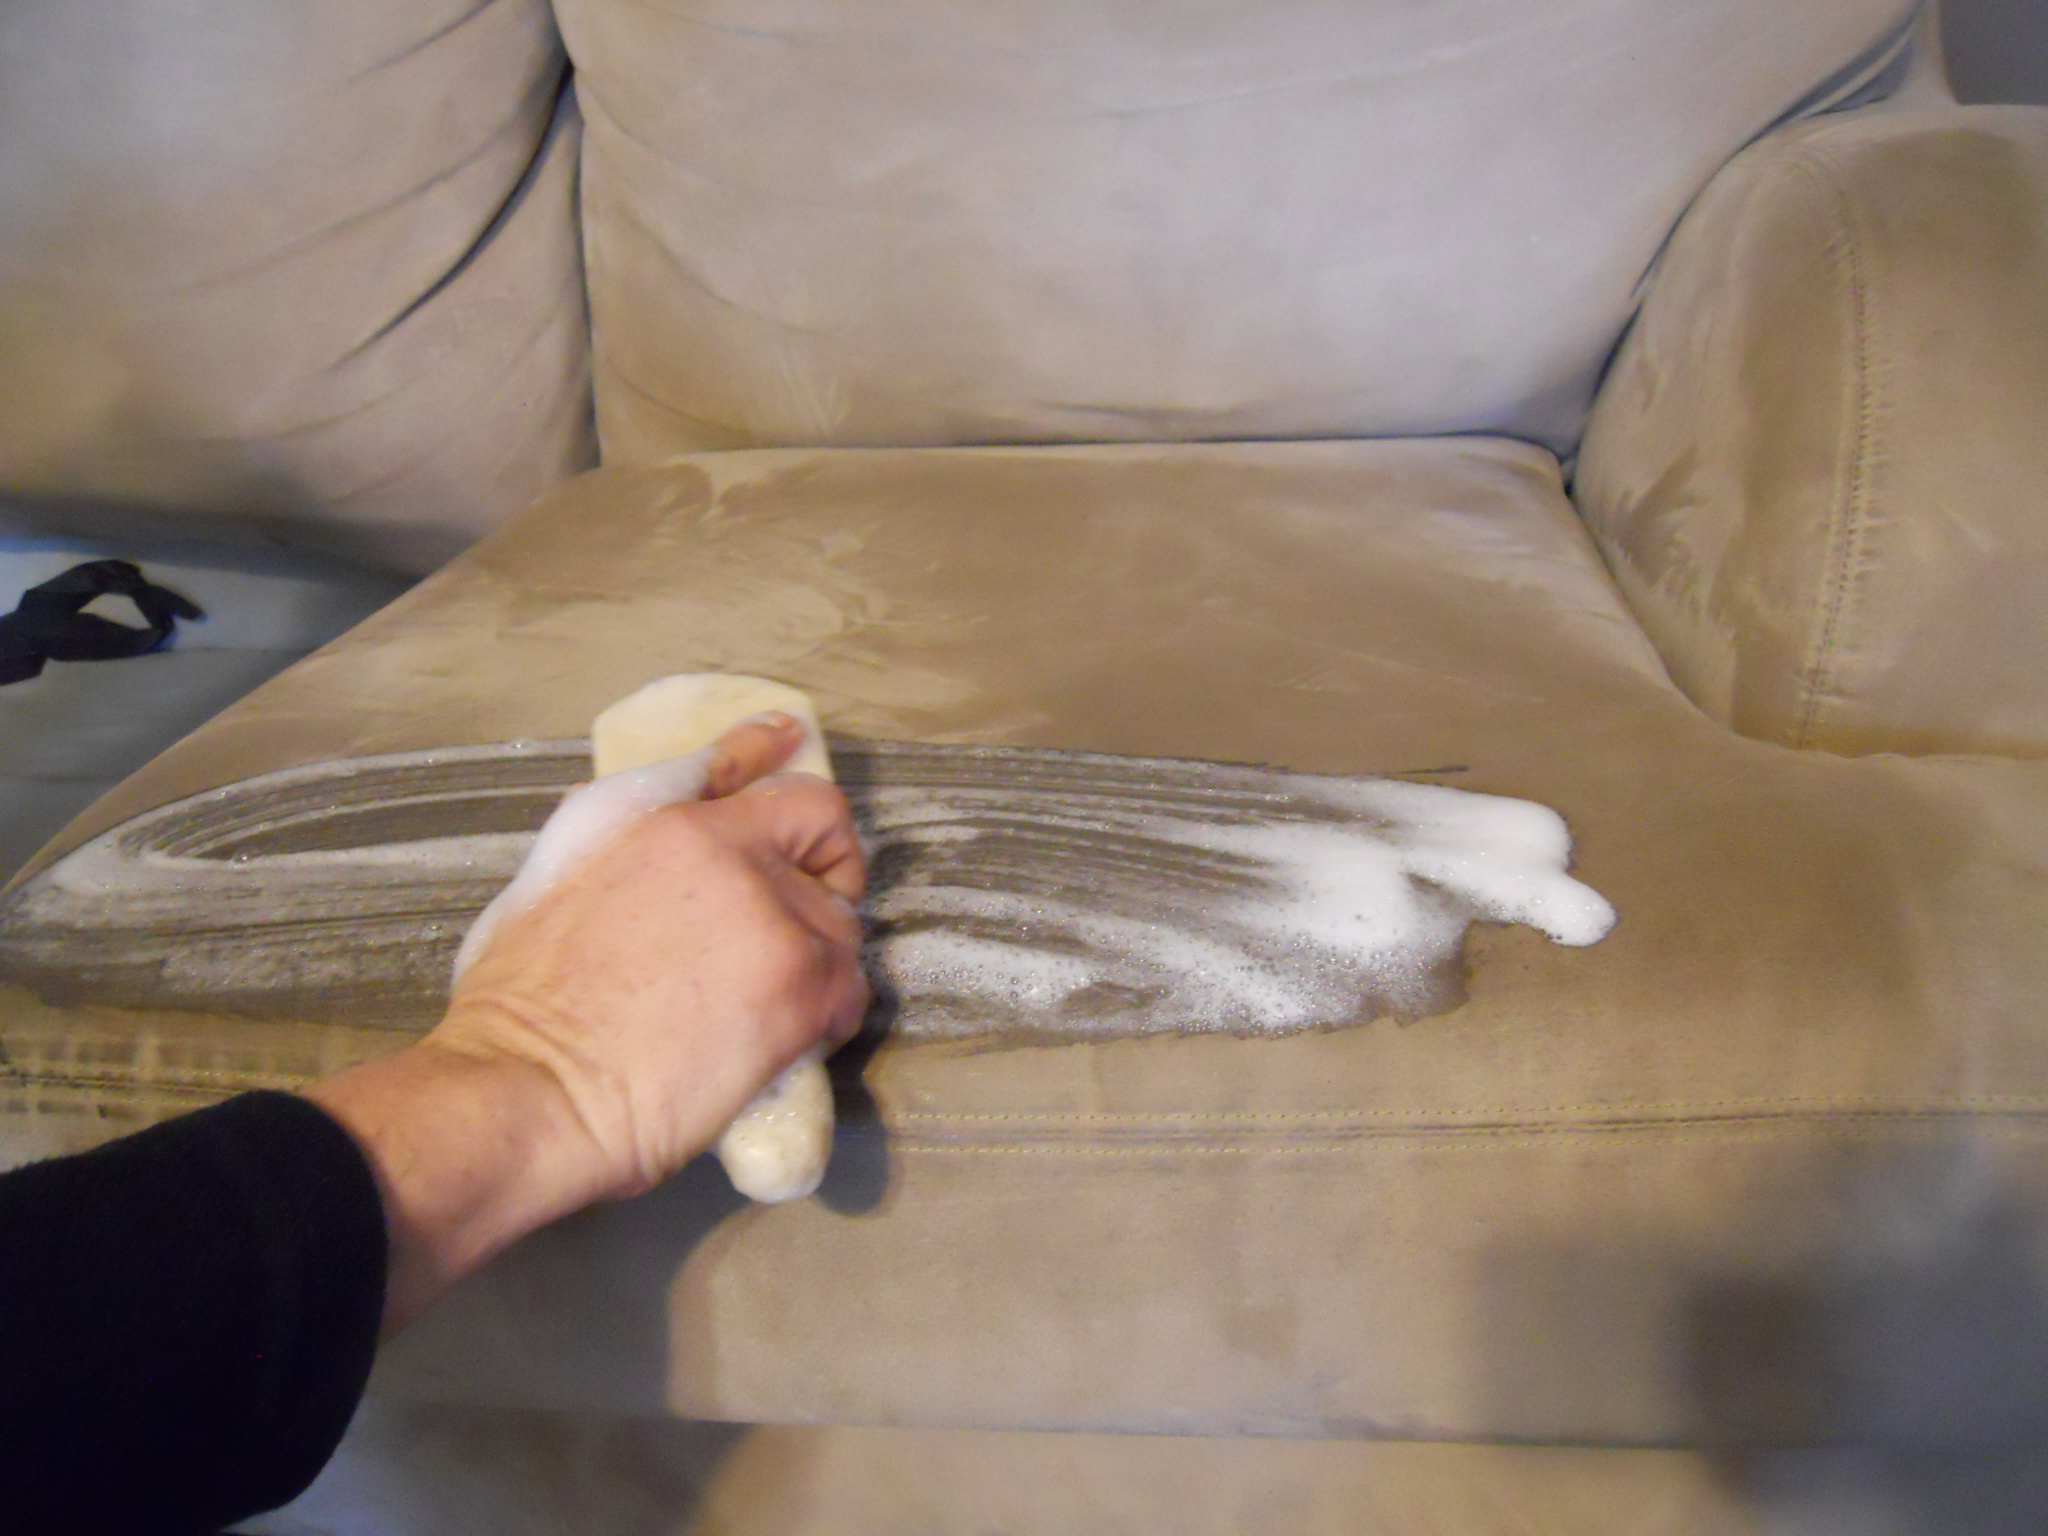 очистить диван от запаха детской мочи